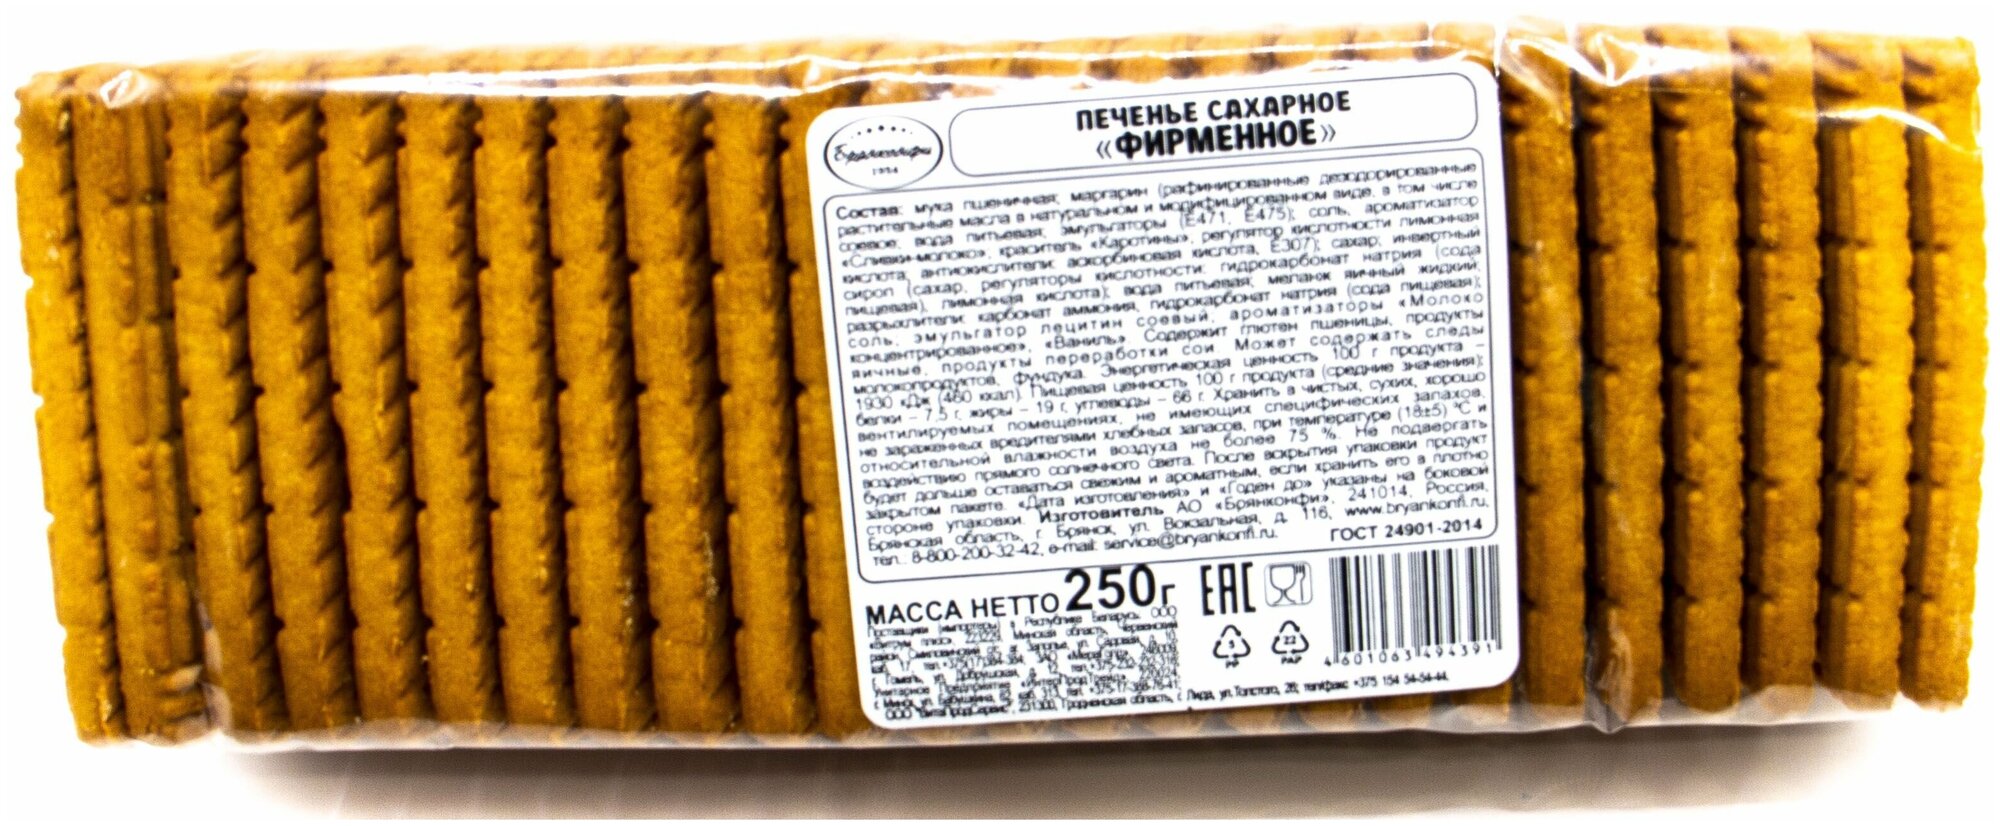 Печенье "Фирменное" сахарное Брянконфи, 250 грамм, Изготовлено по ГОСТ 24901-2014, Артикул - 3044009. - фотография № 2